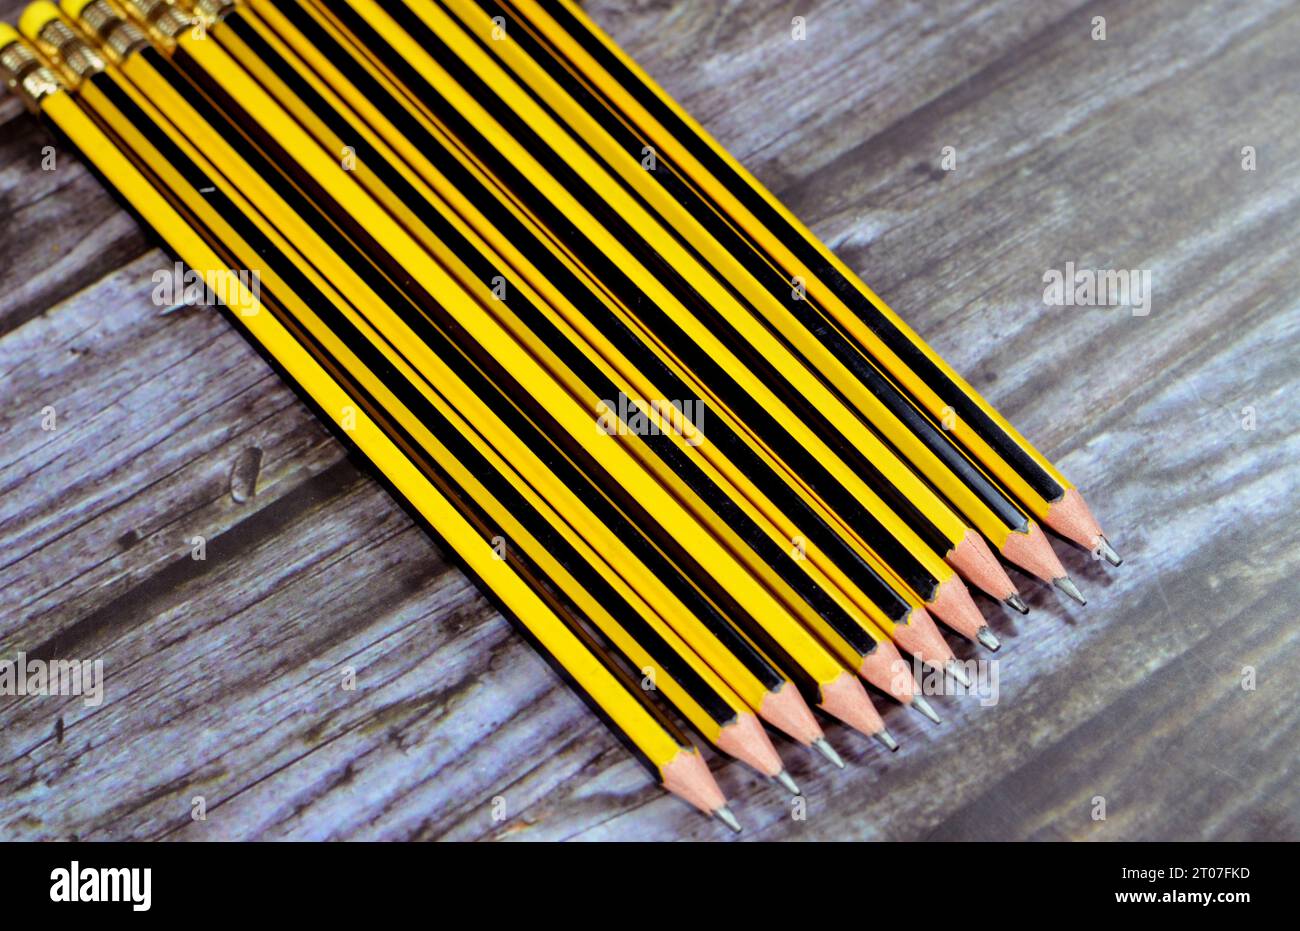 Bleistiftreihe, ein Bleistift ist ein Schreib- oder Zeichengerät mit einem festen Pigmentkern in einer Schutzhülle, die das Risiko eines Kernbruchs reduziert, an Stockfoto